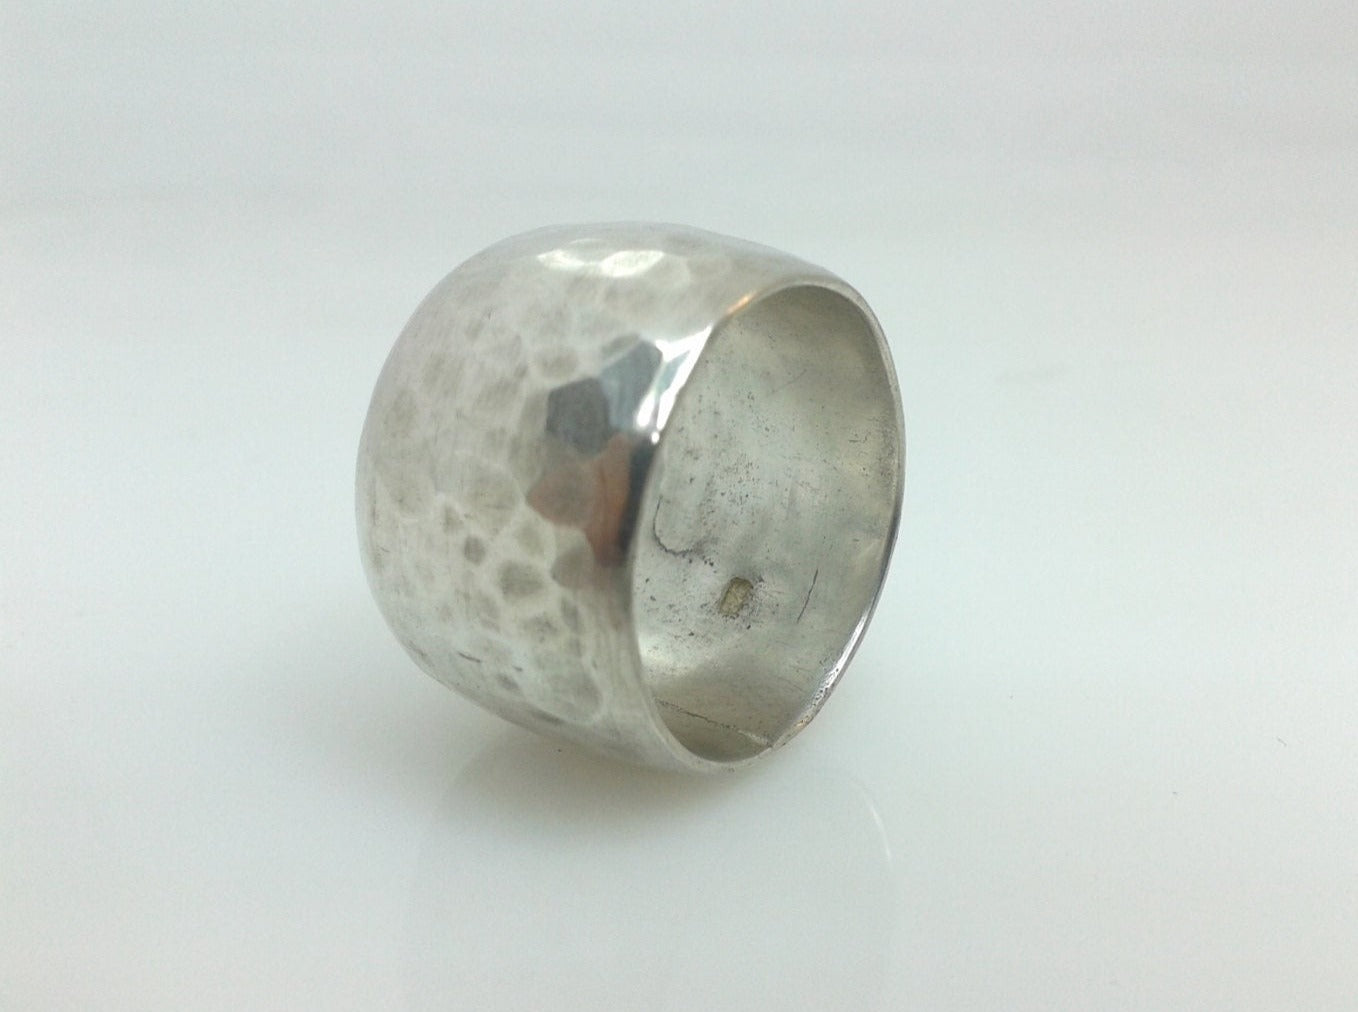 Dieser Ring ist einfach fantastisch. Wenn Sie ein großer Silberring suchen, hier sind Sie richtig. Er ist 14 mm (1/2") breit und 2 mm dick und verjüngt sich zu den Kanten hin. Ich habe ihn geschmiedet, was ihm die herrliche gehämmerte Struktur verleiht, die Sie auf den Bildern sehen. 